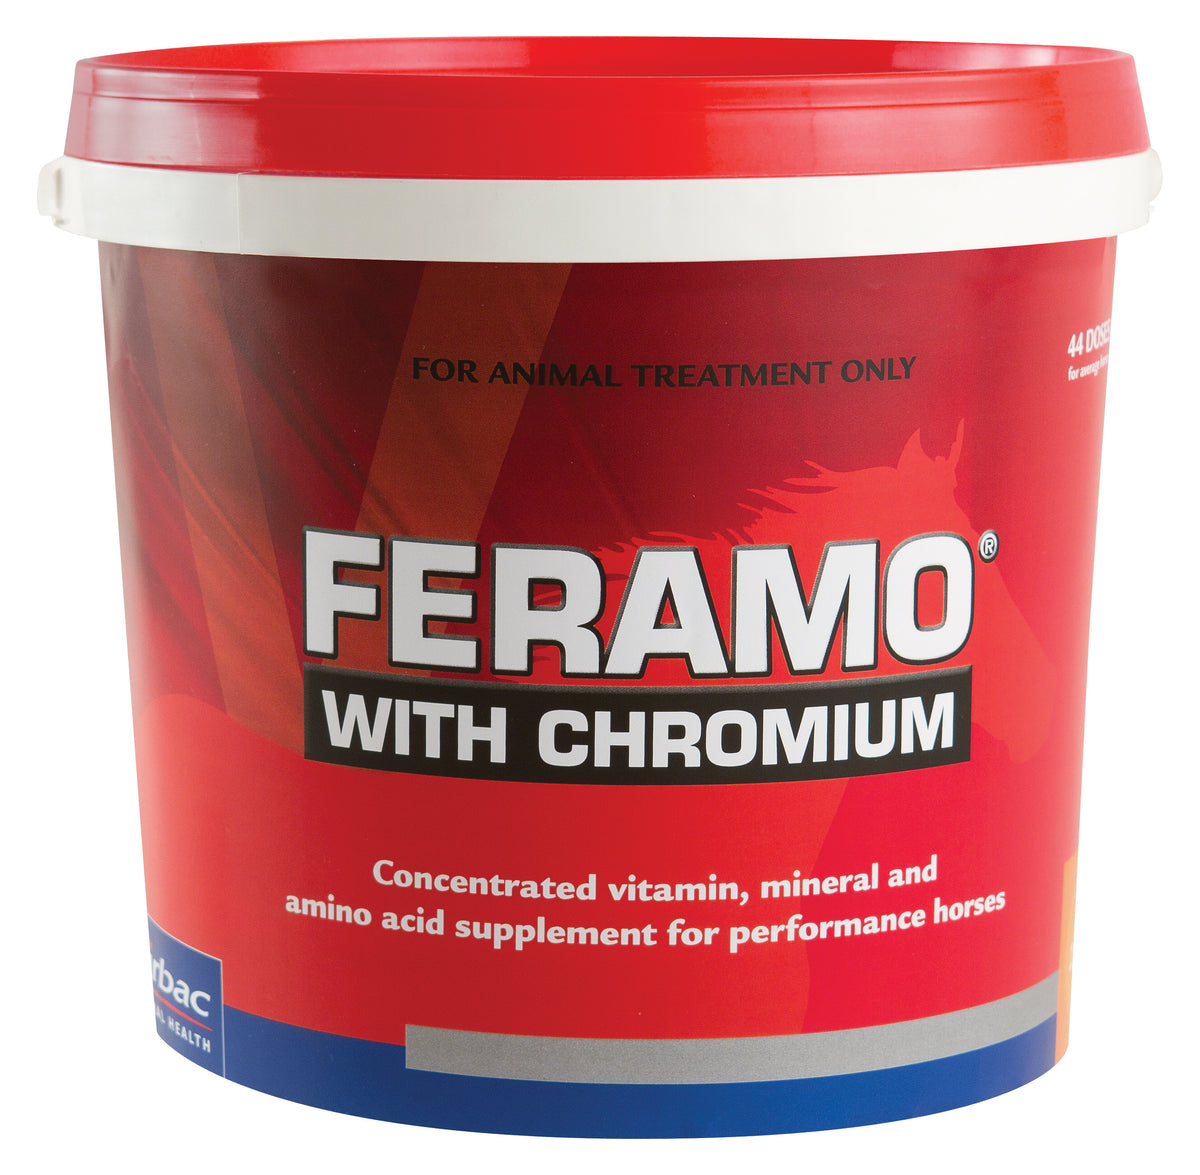 FERAMO with CHROMIUM